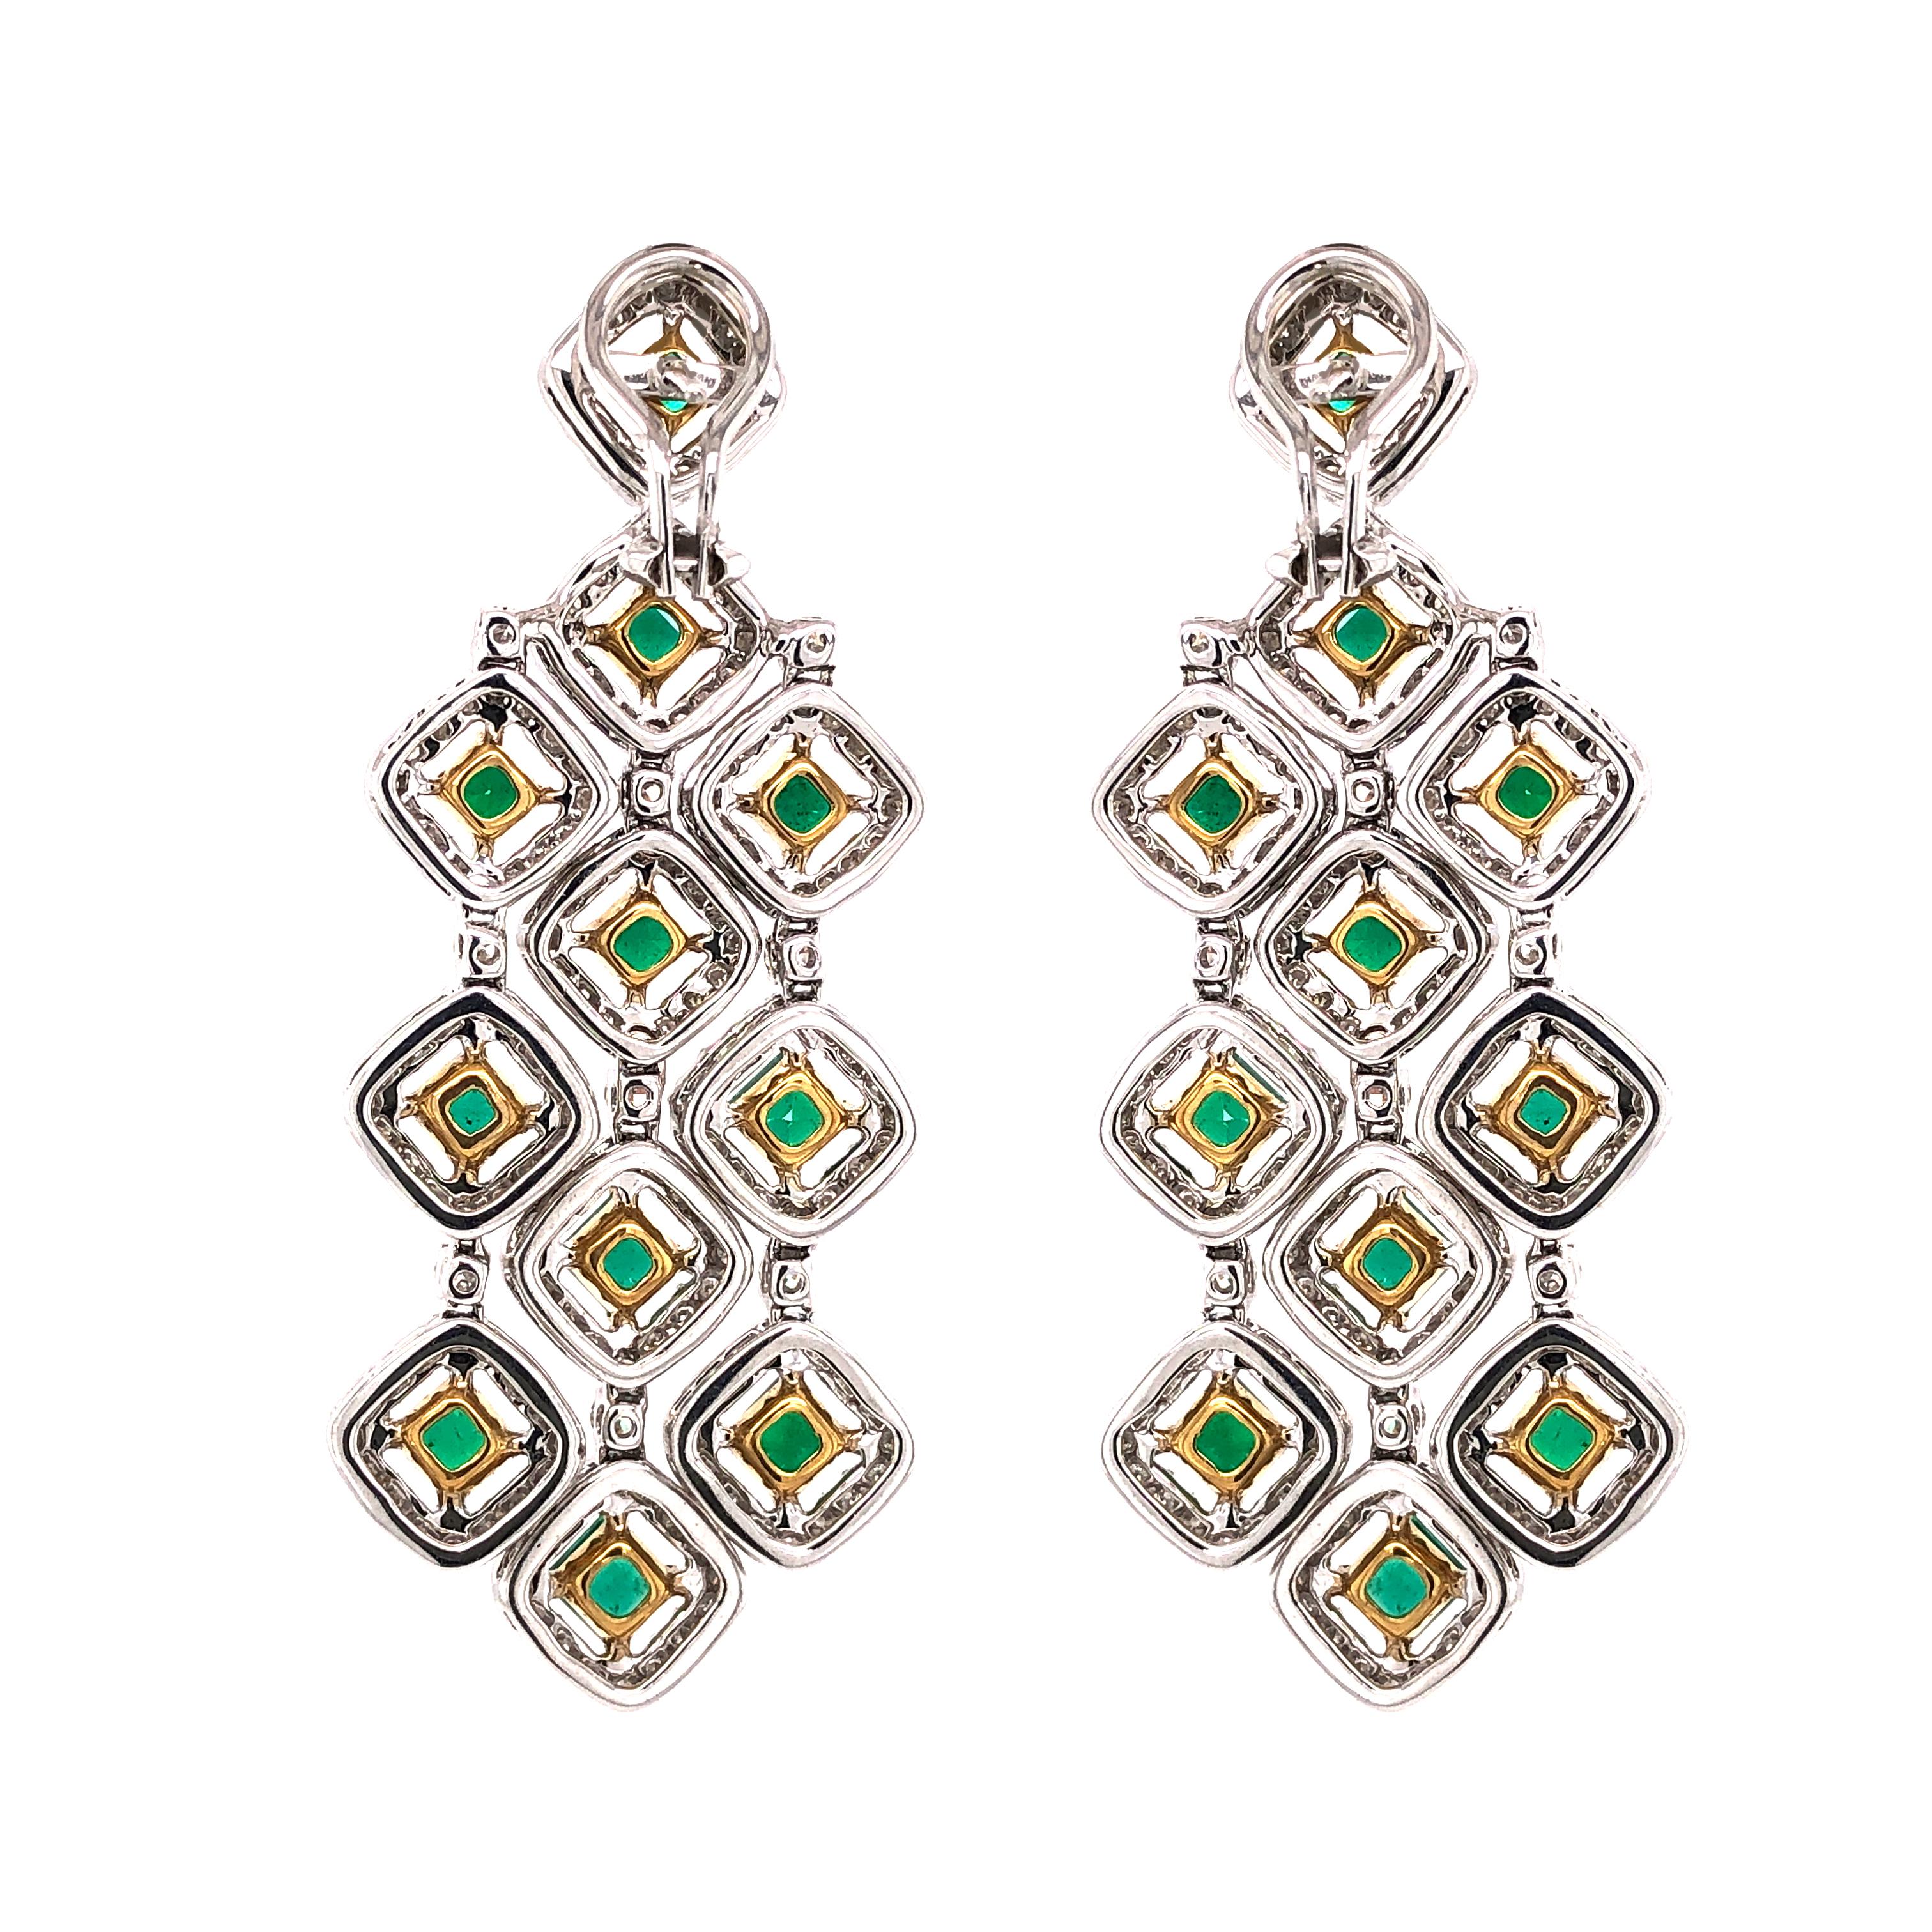 Princess Cut Zambian Square Cut Emeralds 7.11 Carat Chandelier 18k Gold Earrings For Sale